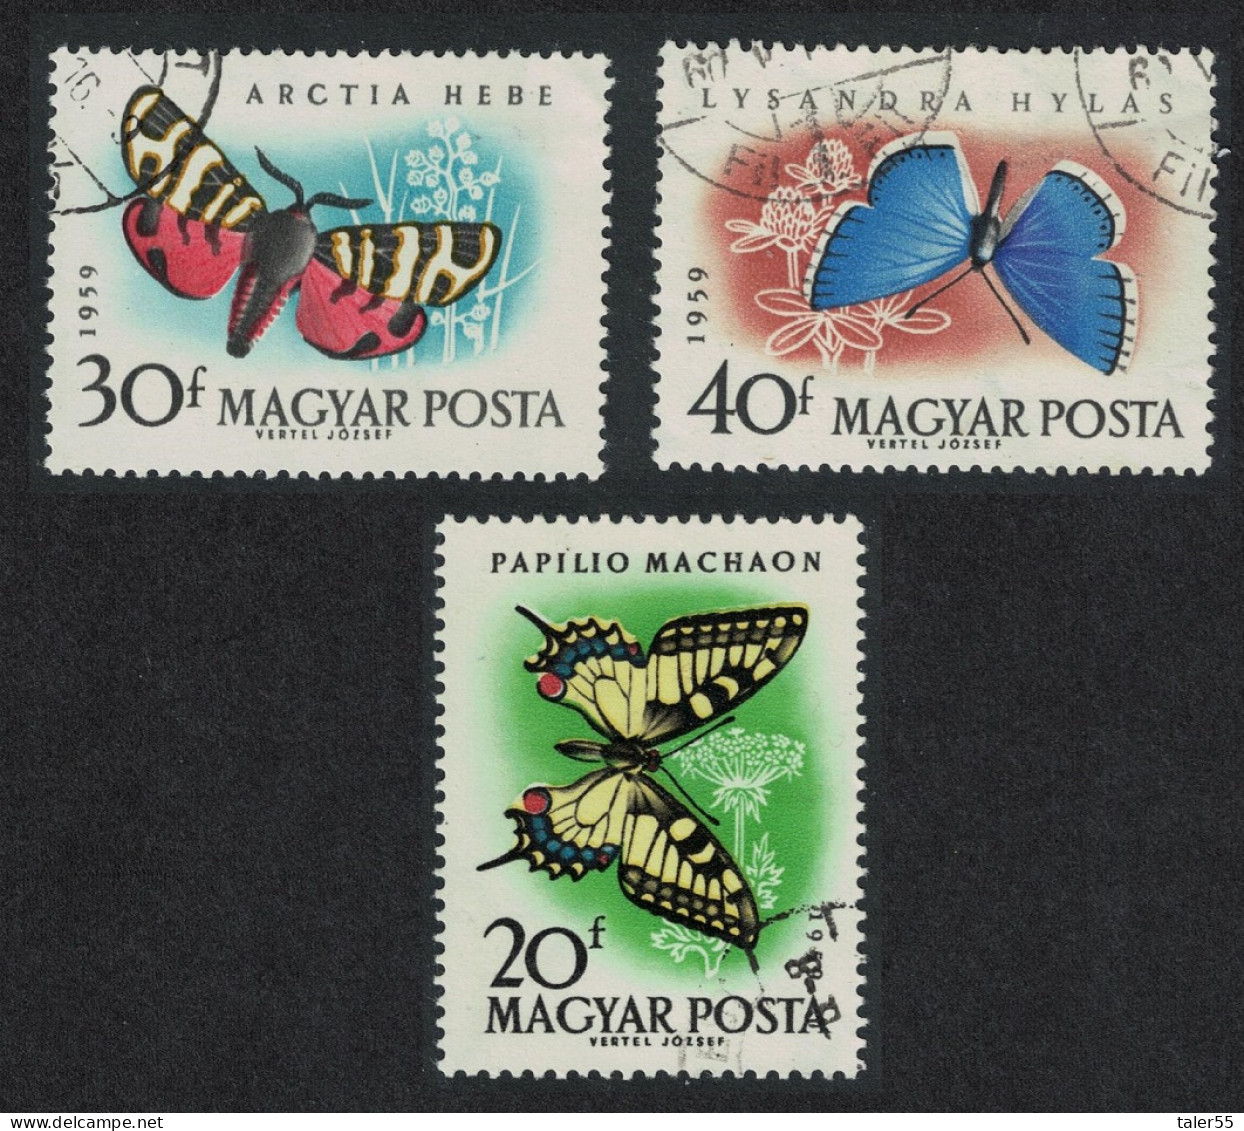 Hungary Butterflies And Moths 3v 1959 Canc SG#1612-1614 MI#1633-1635A - Gebraucht